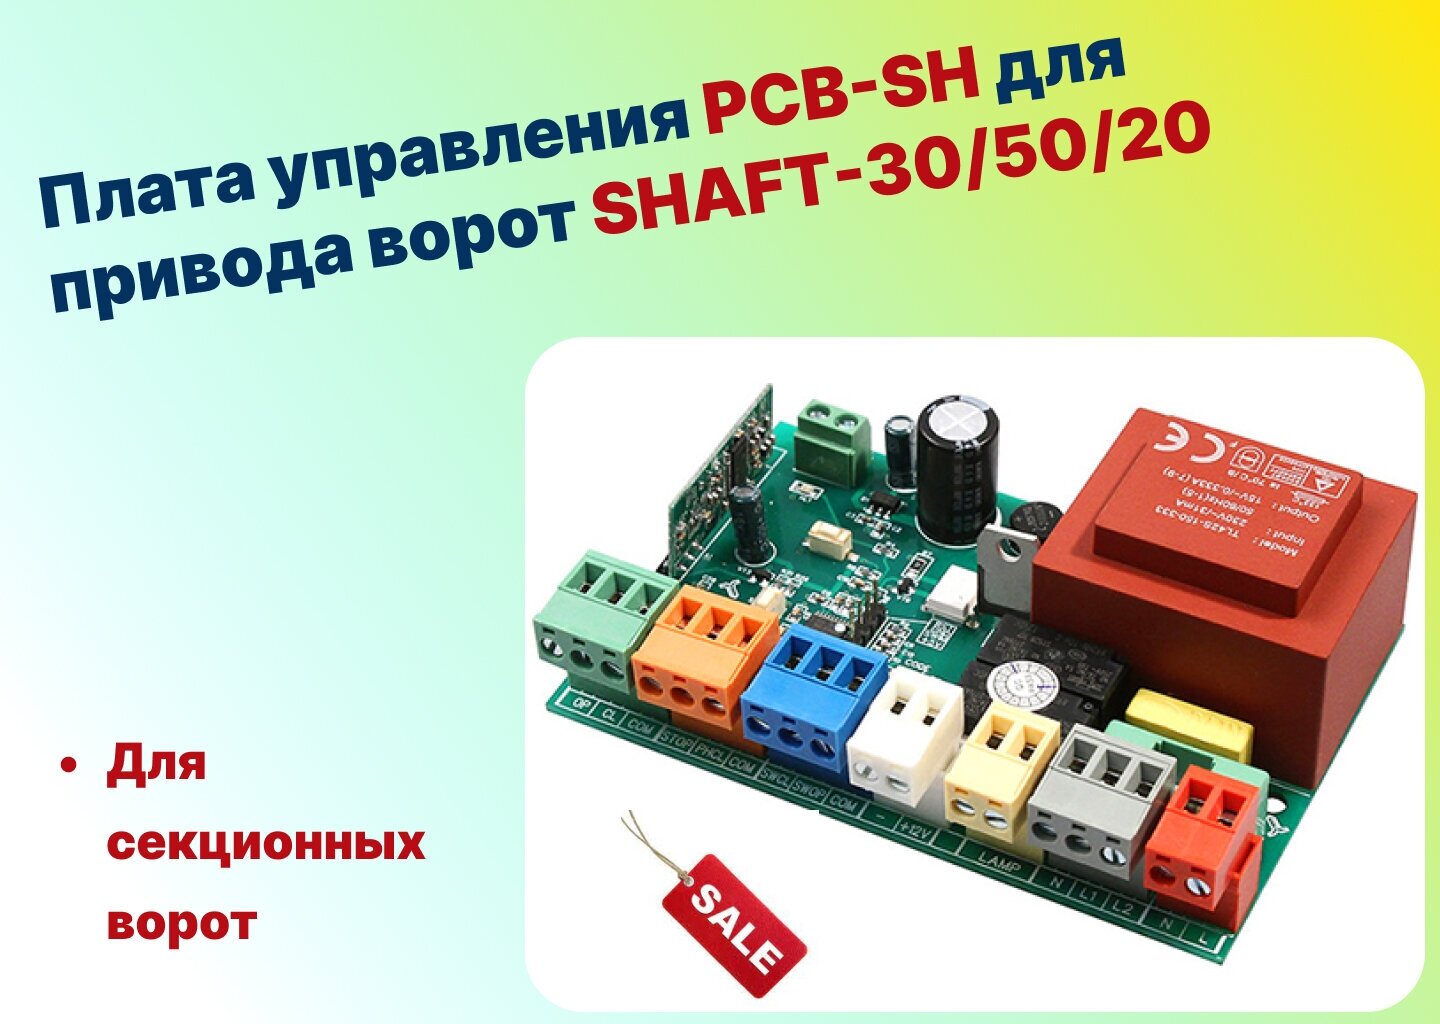 Плата управления PCB-SH для привода ворот SHAFT-30/50/20 (DOORHAN)